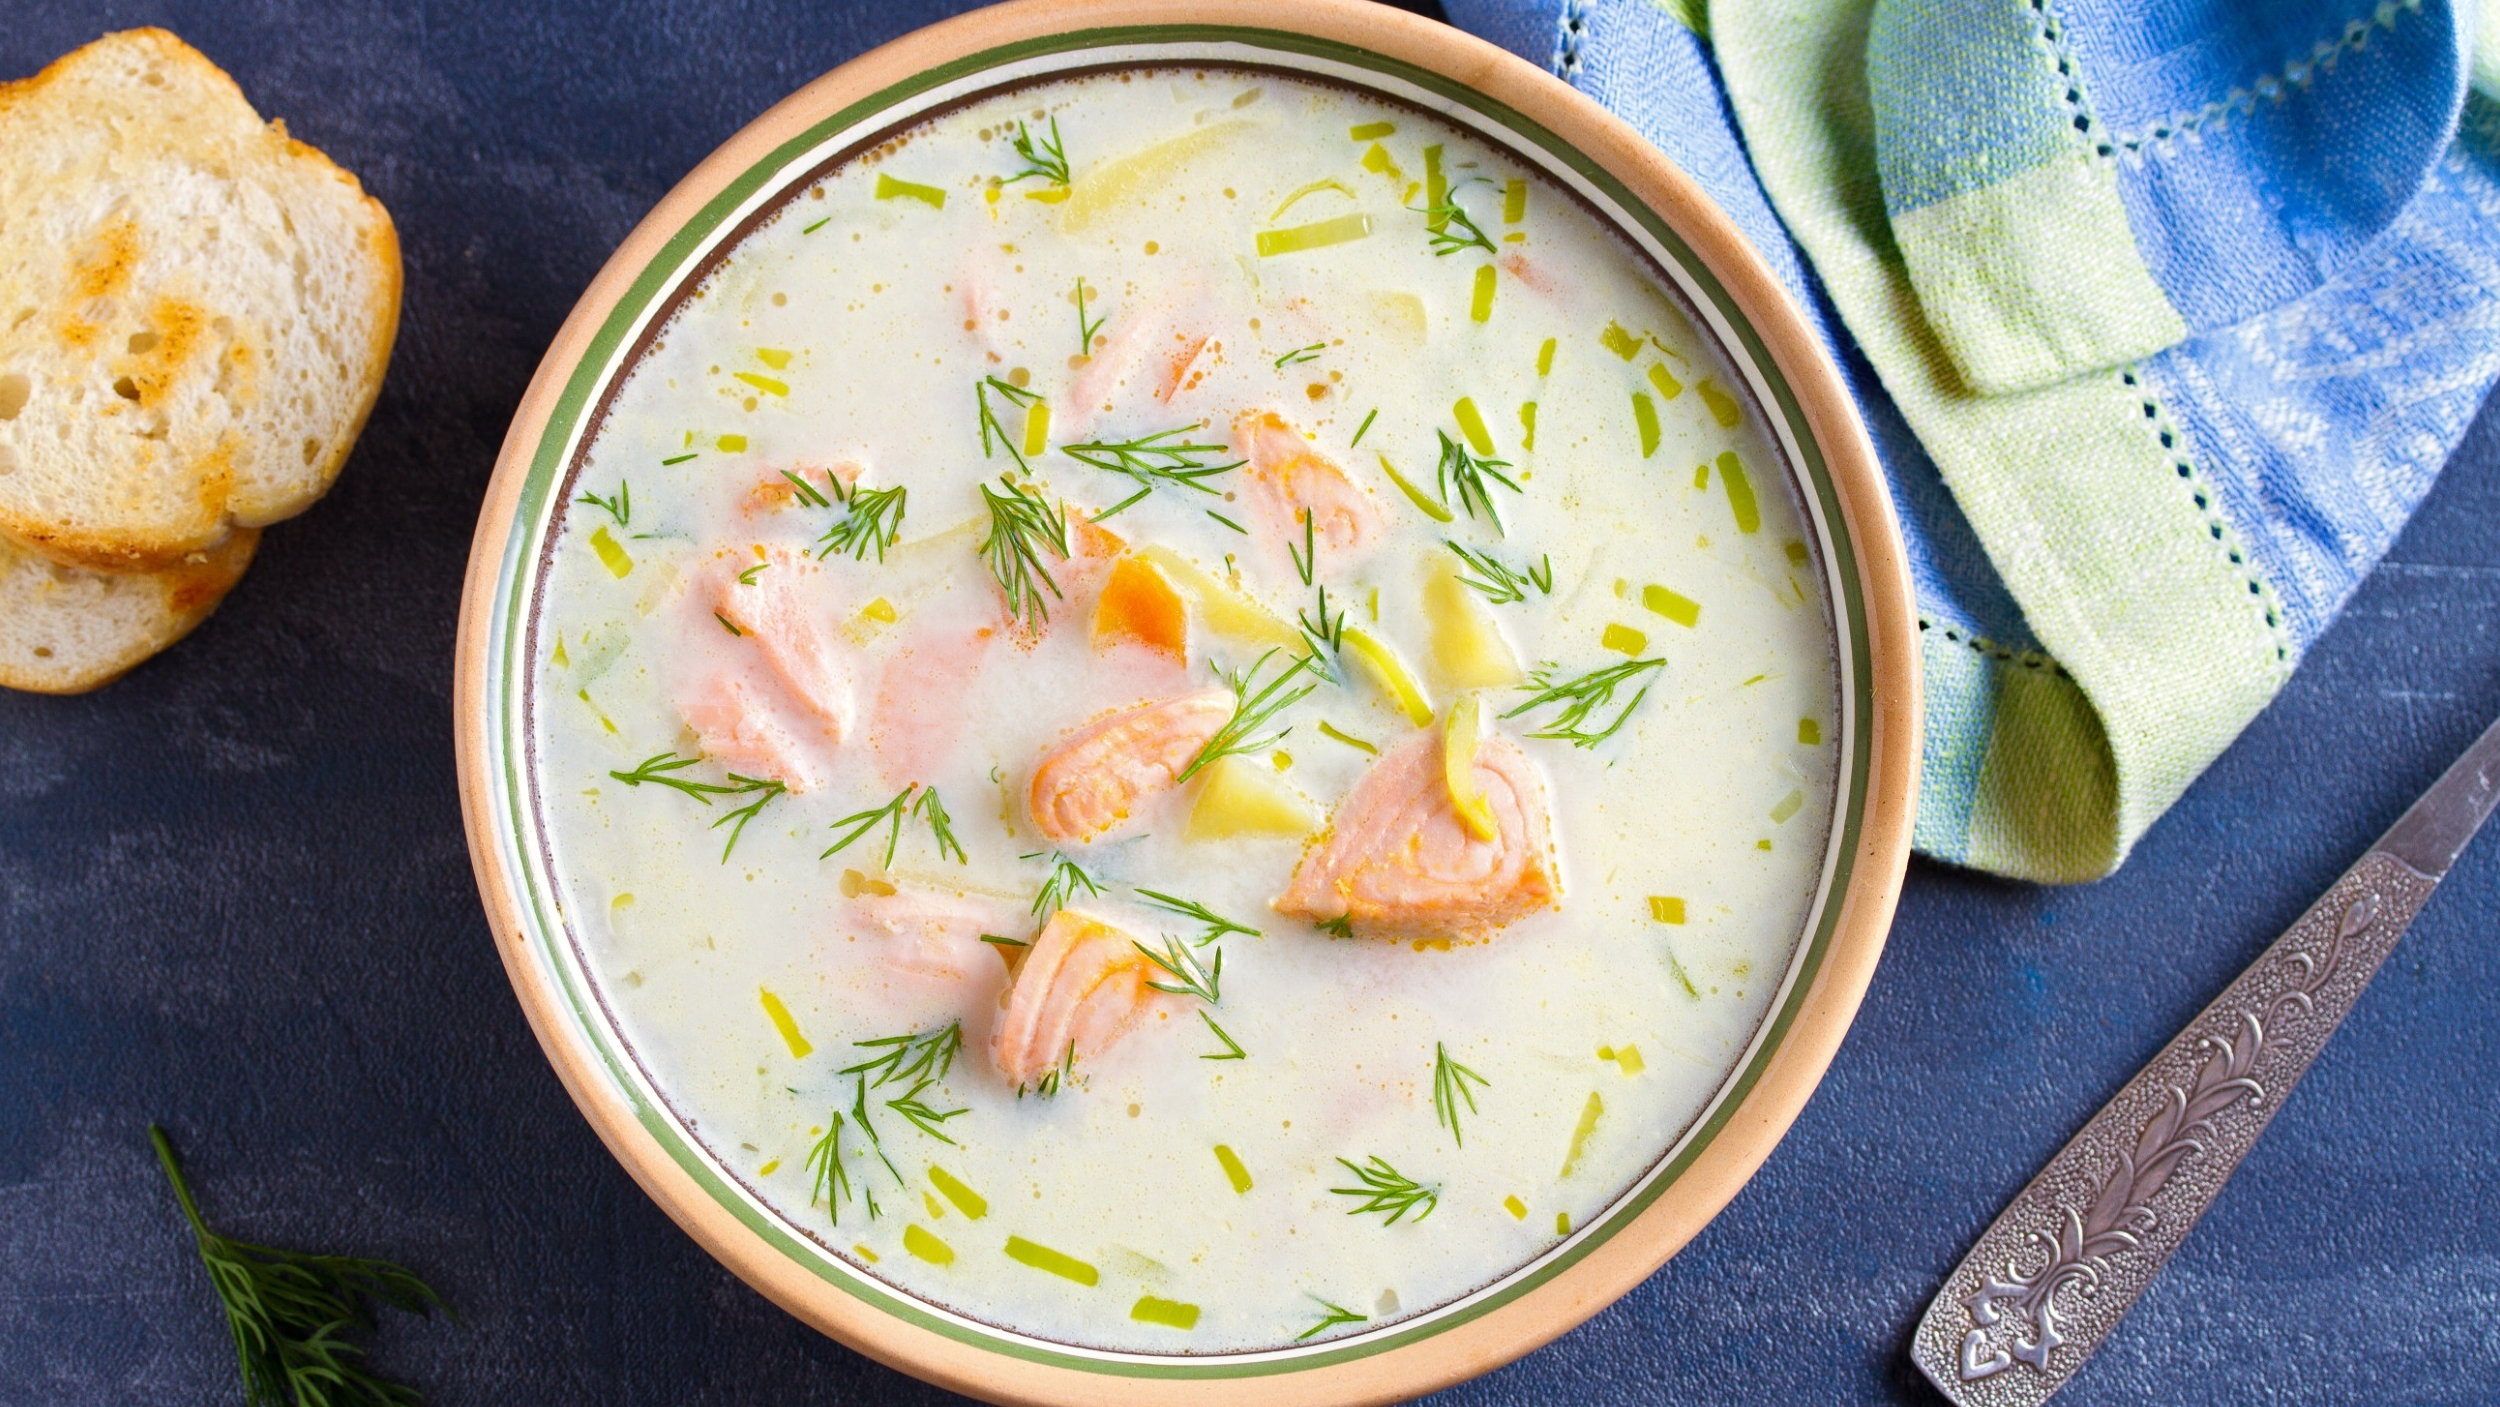 lohikeitto, czyli fińska zupa z łososia, jest delikatna i kremowa. zrobisz ją w 15 minut